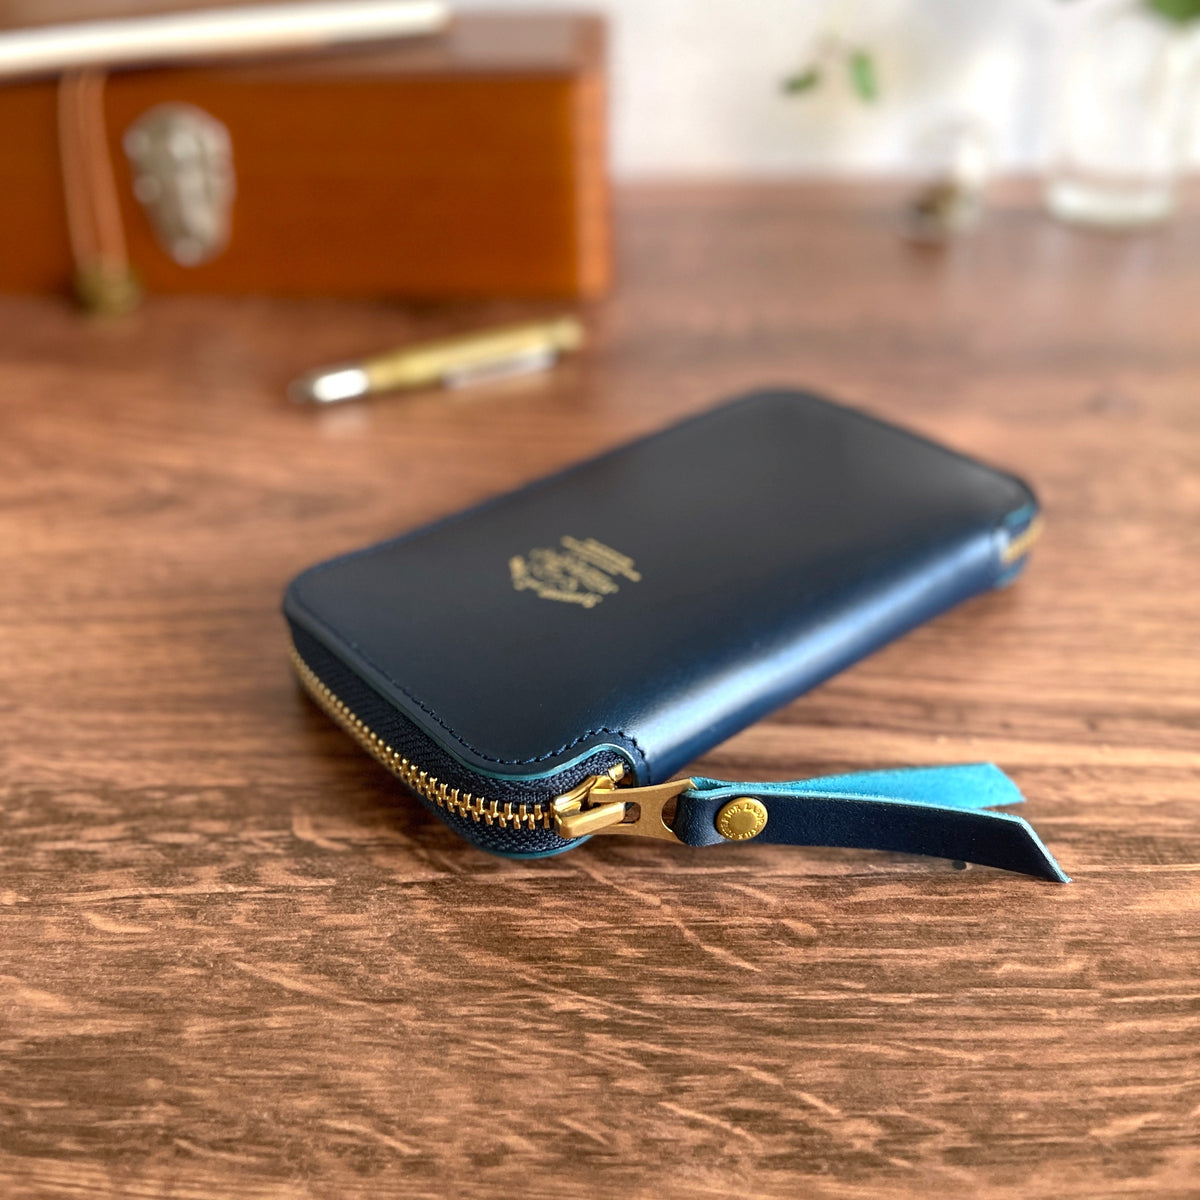 [TSL] Cordovan Leather Zip Pen Case